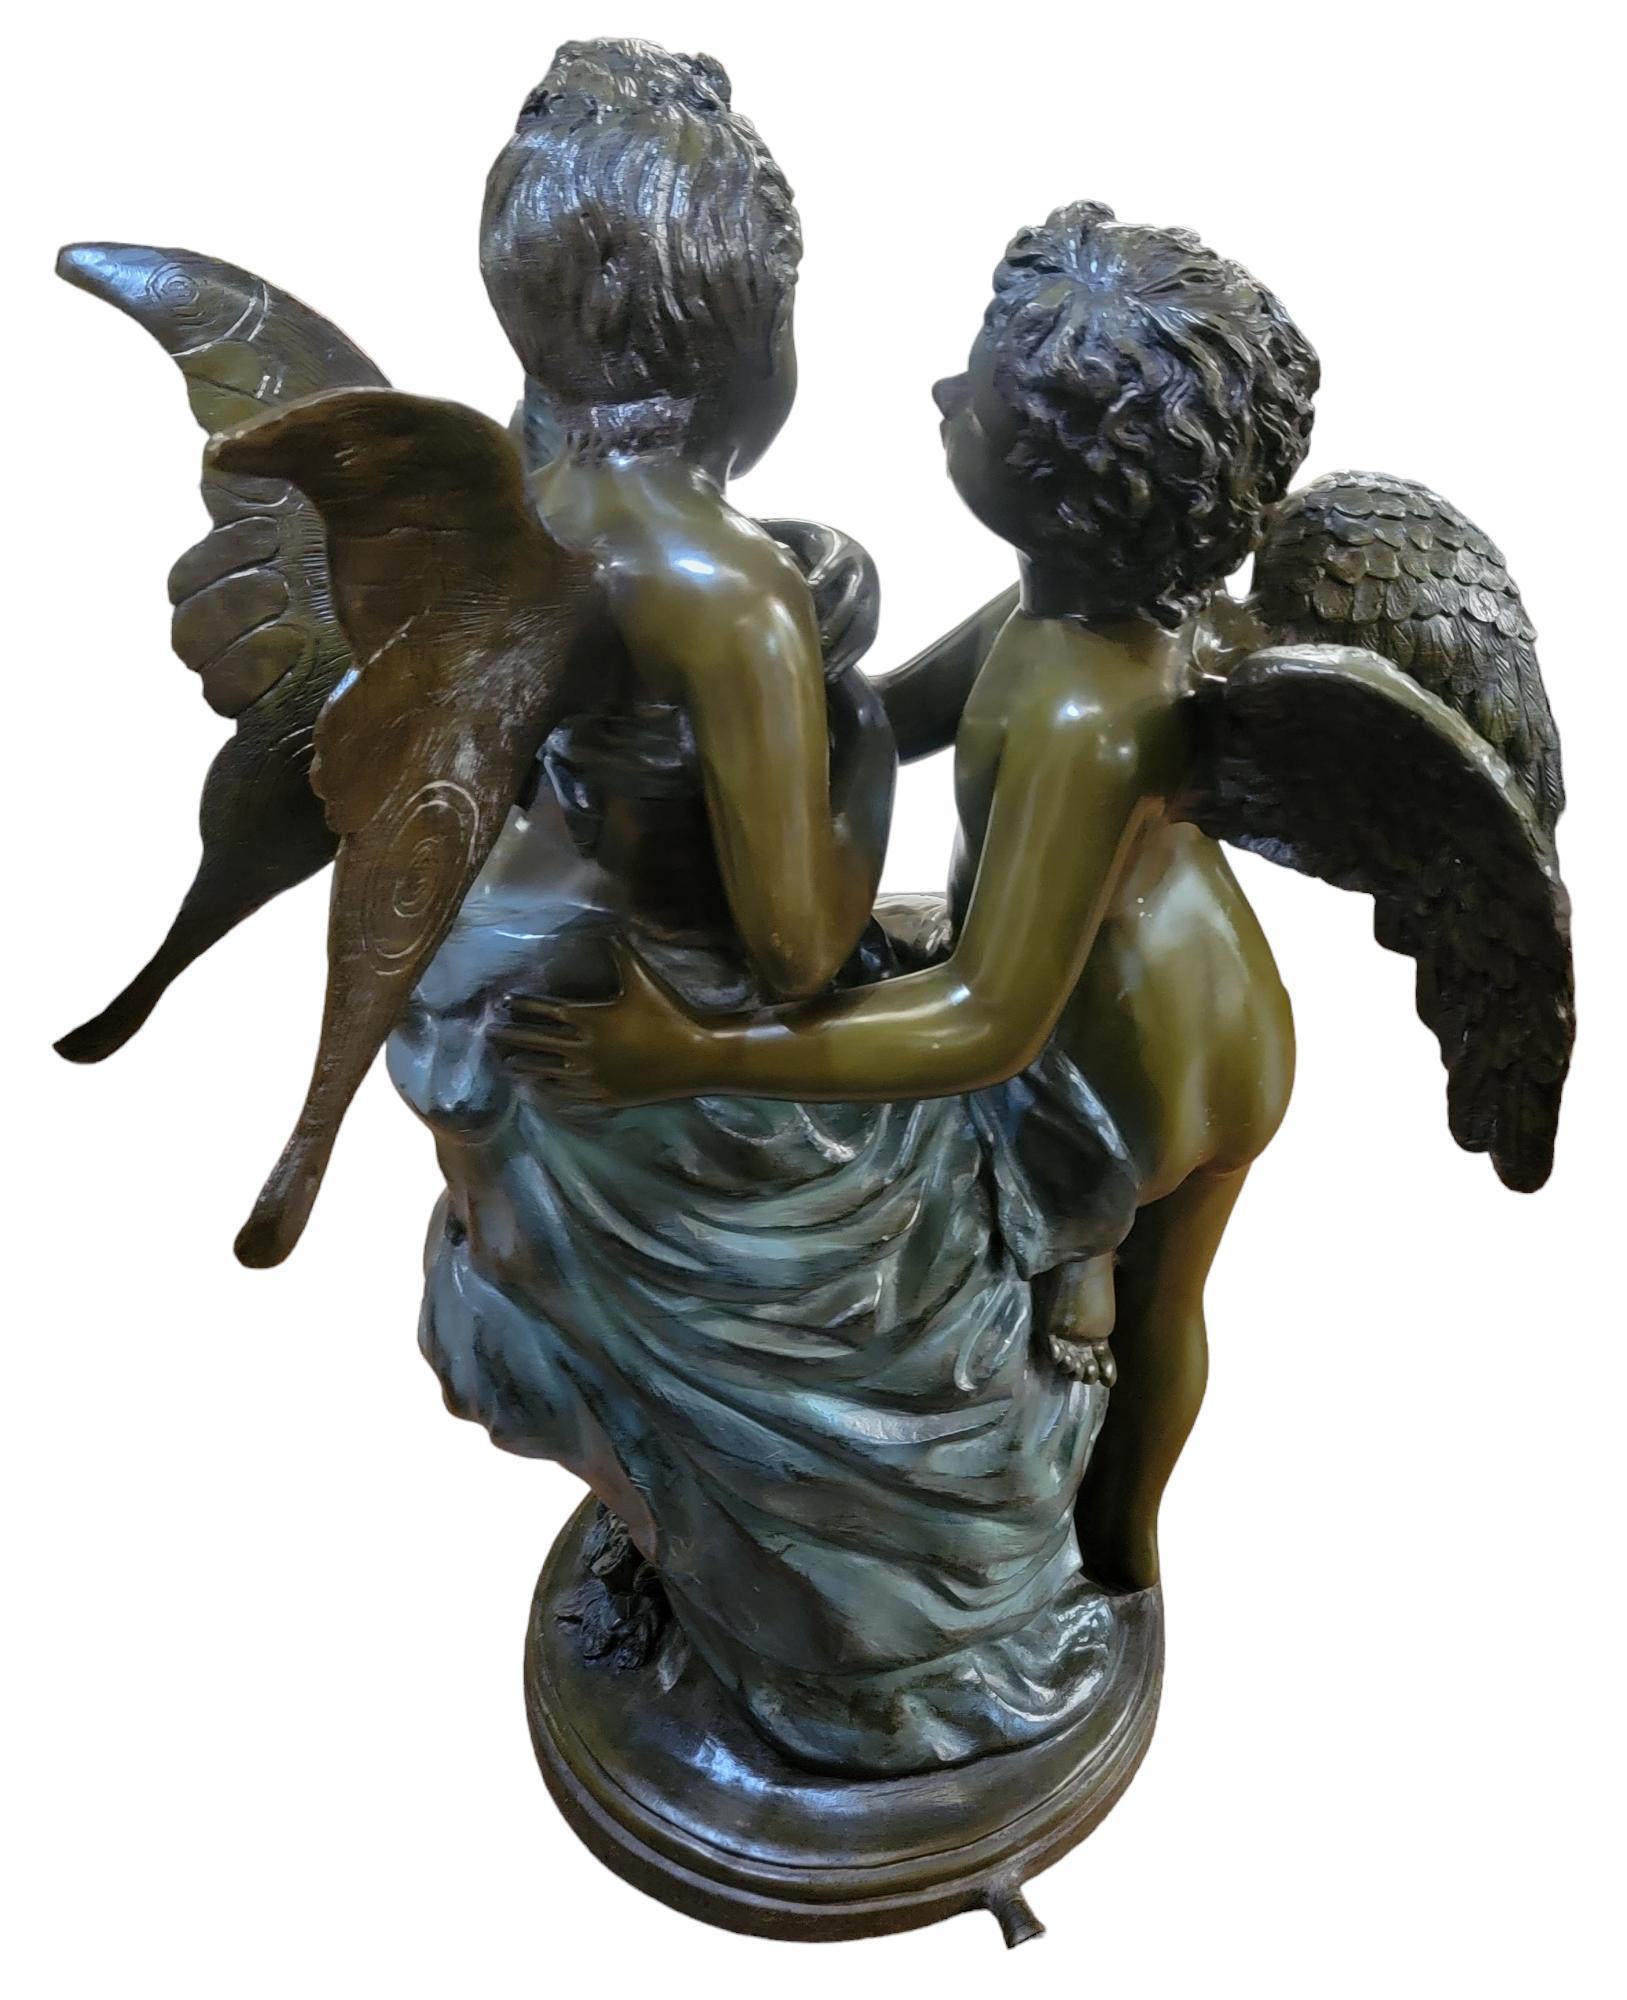 Griechische Amoretten Bronze Statue Selten.  Diese Statue hat 2 Engel, männlich und  weiblich. Die Engel sind scheinbar verliebt. Der männliche Engel starrt den weiblichen Engel an, der scheinbar schüchtern ist. Die Essenz der Liebe wird von dieser